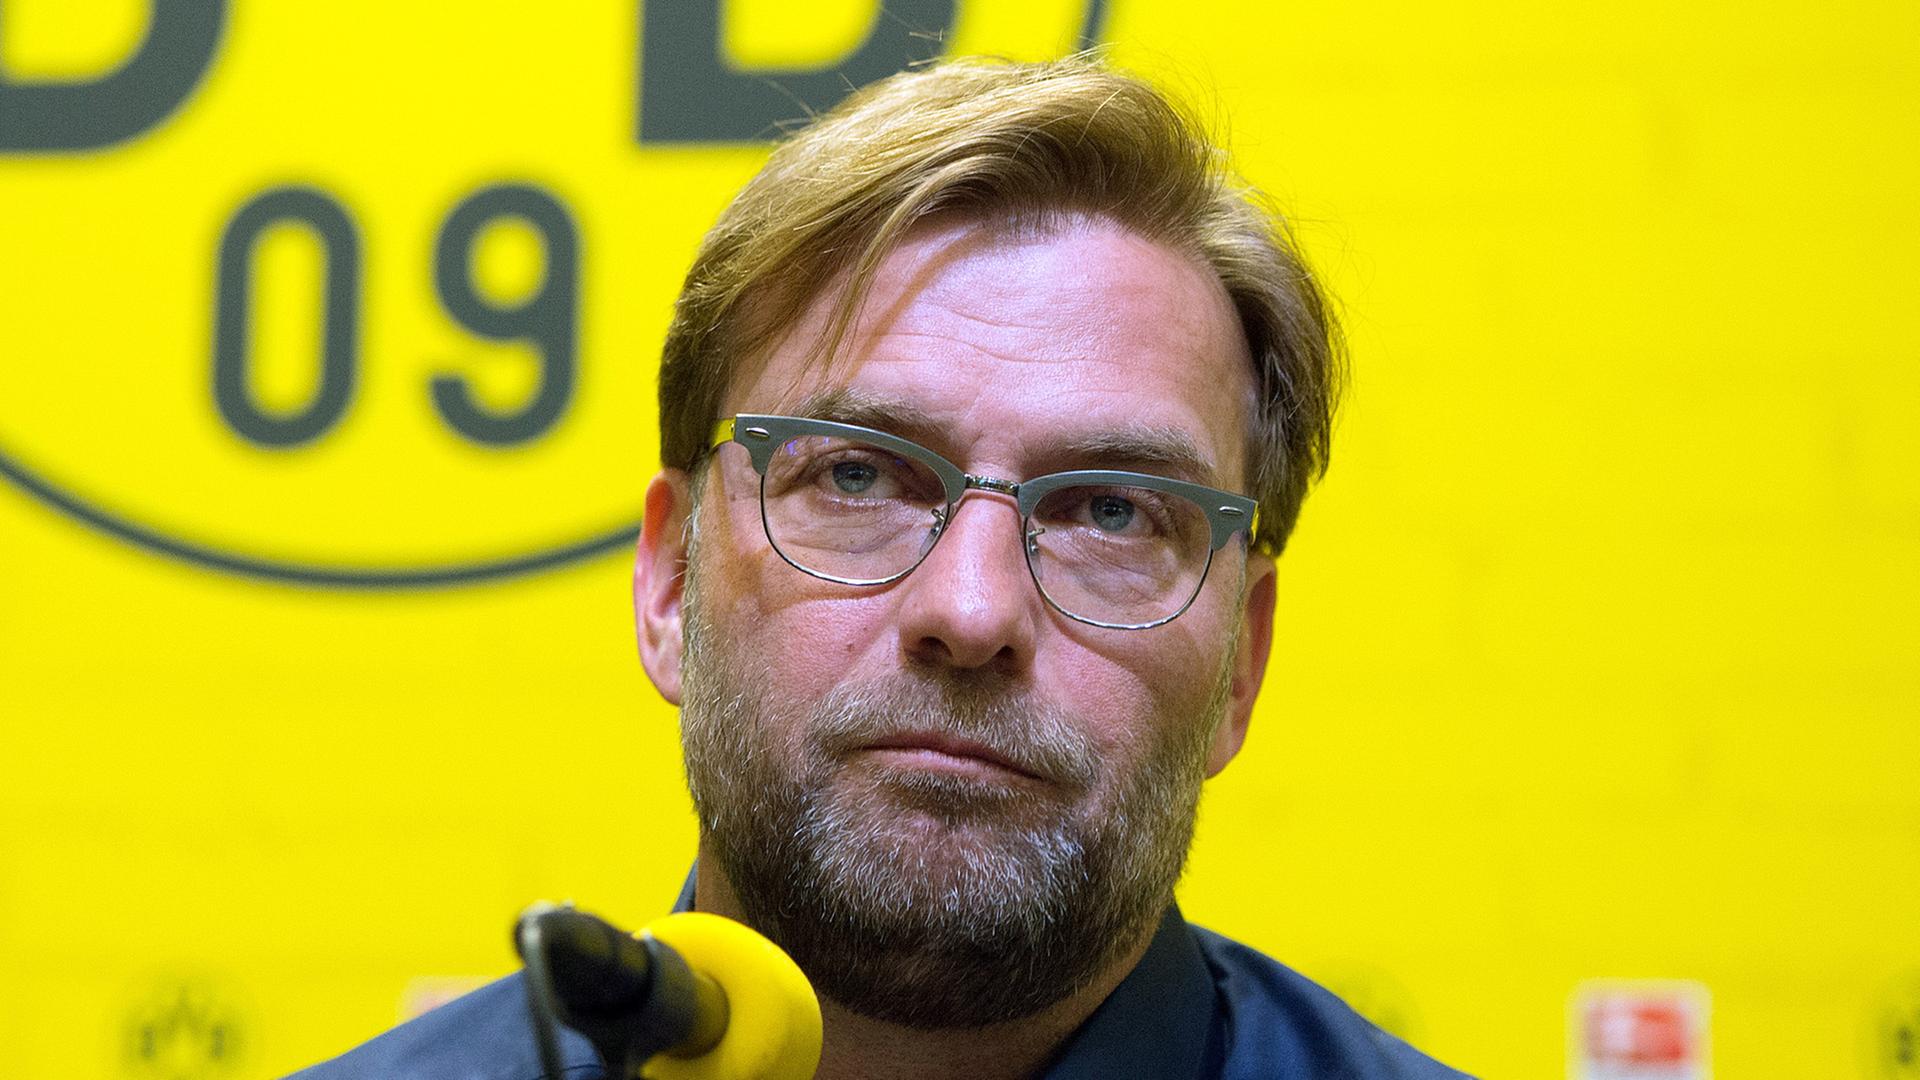 Der Dortmunder Trainer Jürgen Klopp spricht einer Pressekonferenz des Fußball-Bundesligisten Borussia Dortmund im Signal Iduna Park in Dortmund.